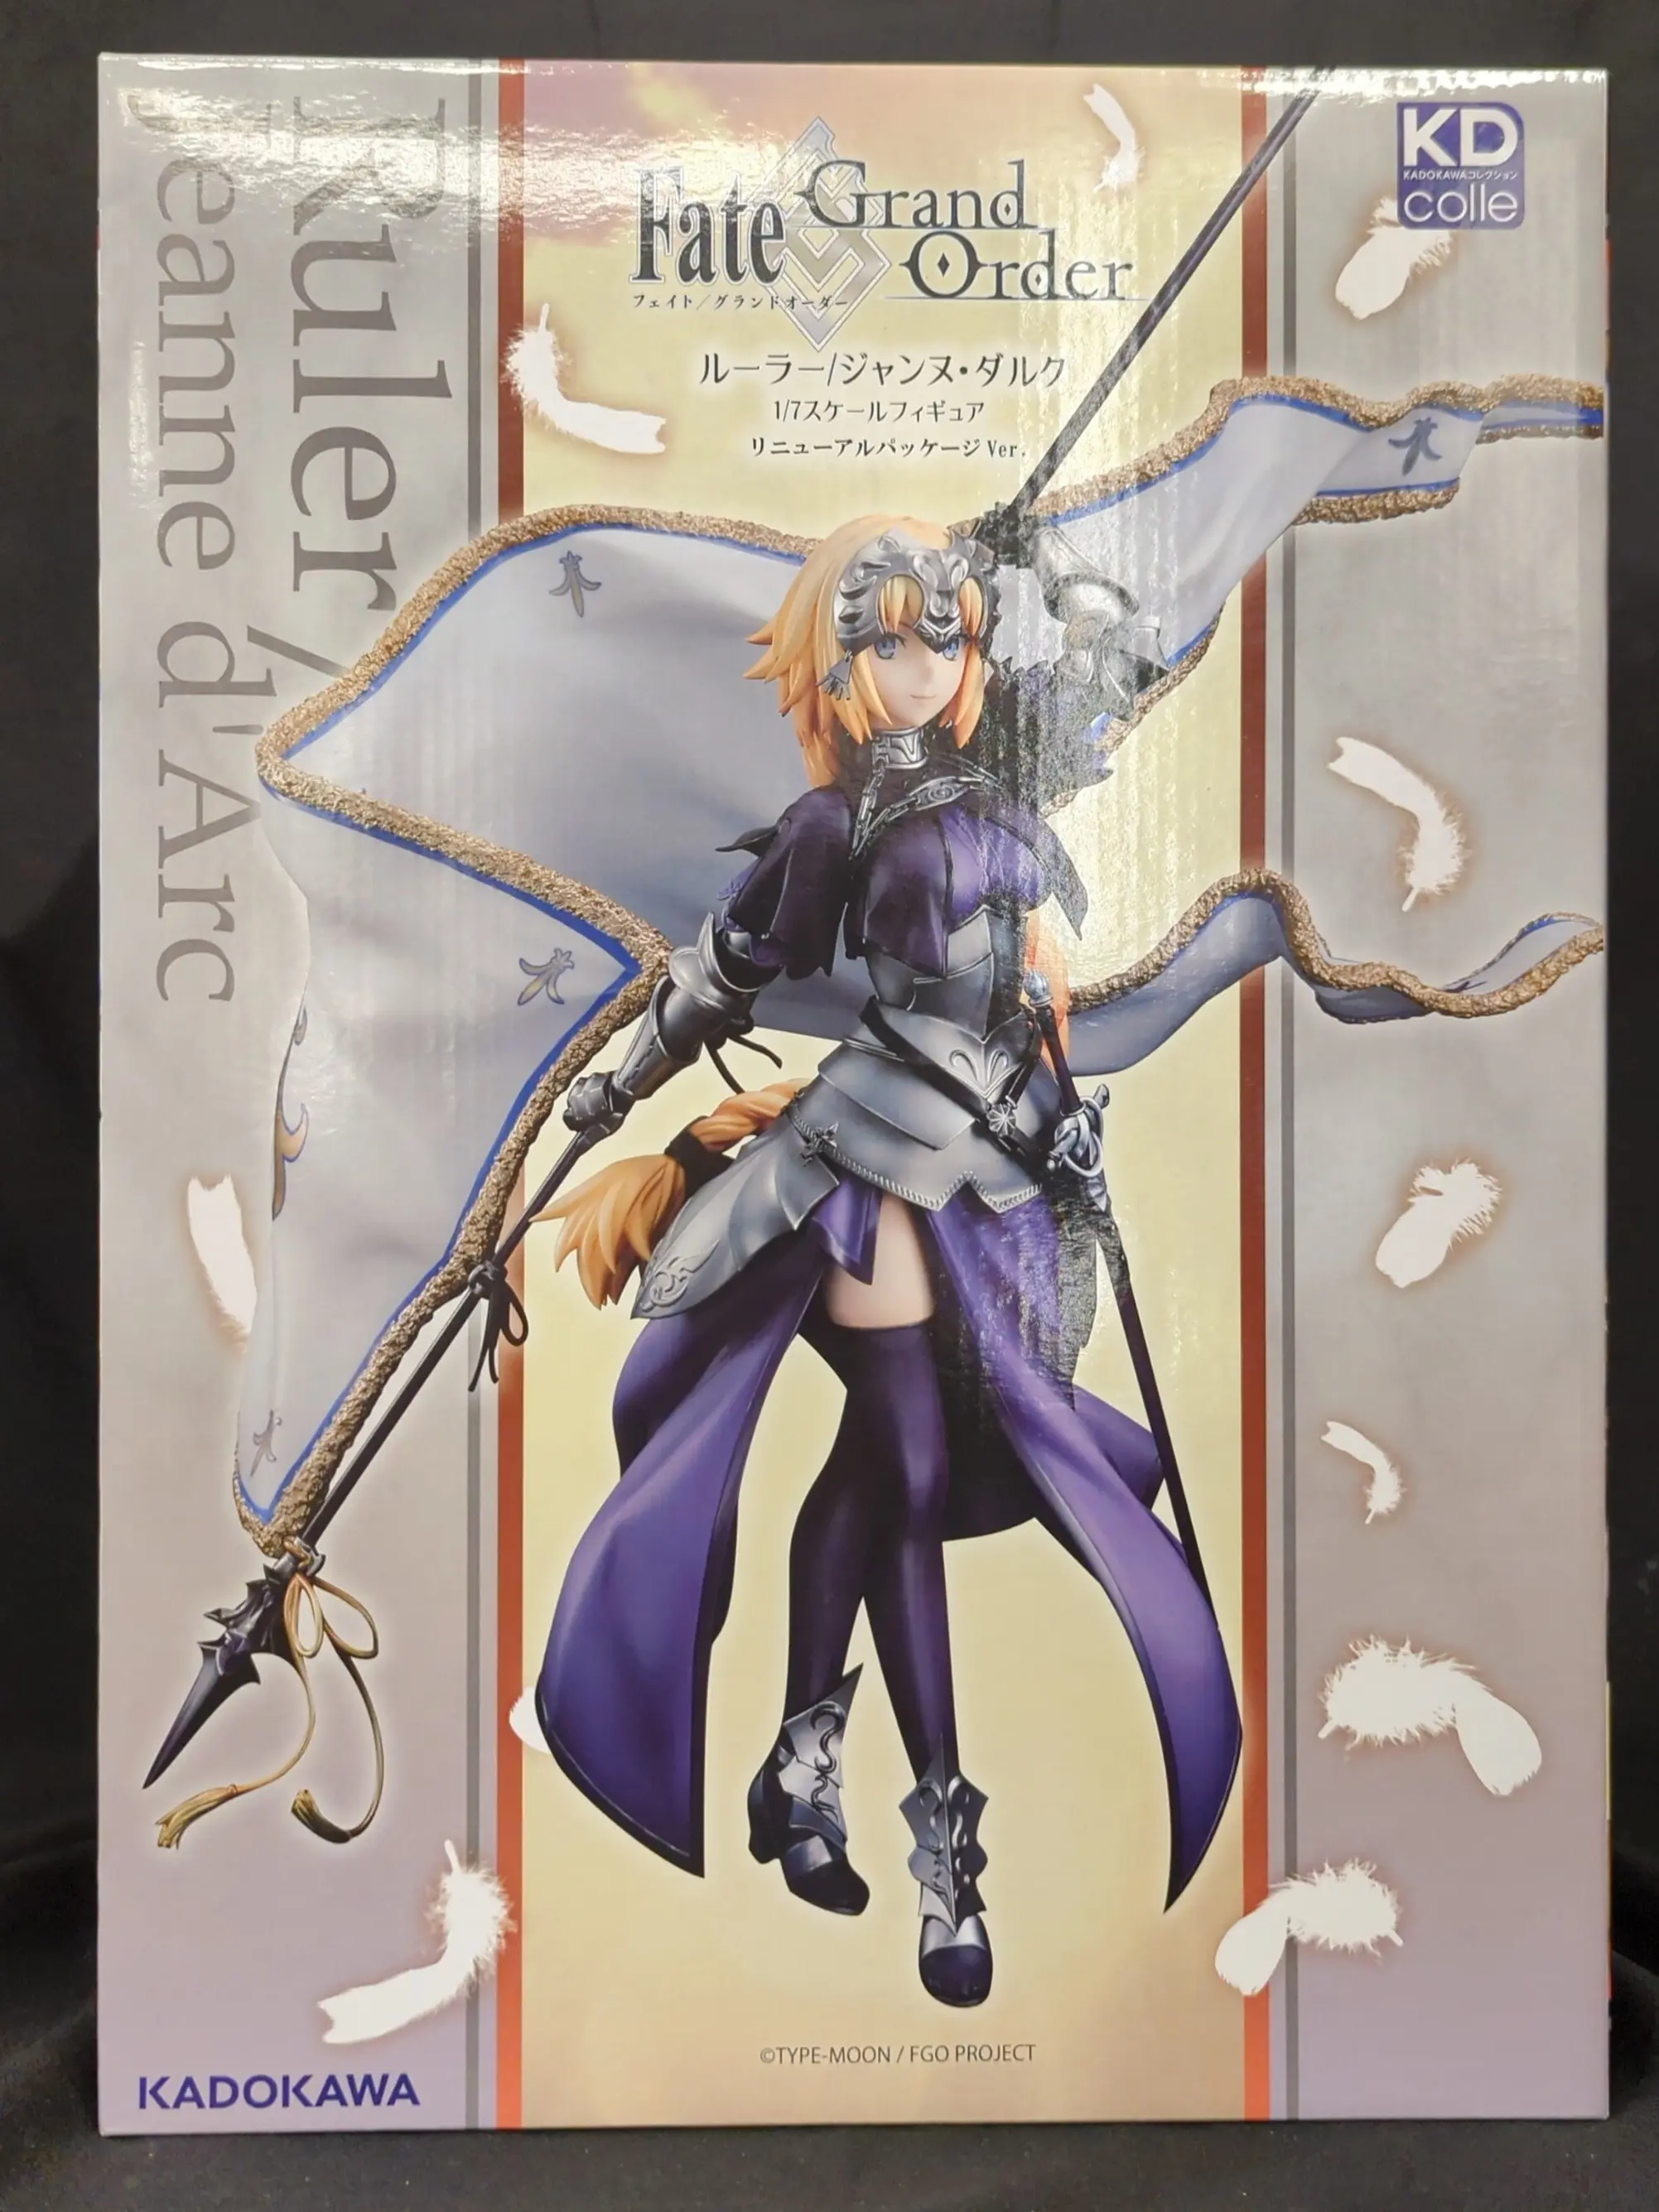 KDcolle - Fate/Grand Order / Jeanne d'Arc (Fate series)